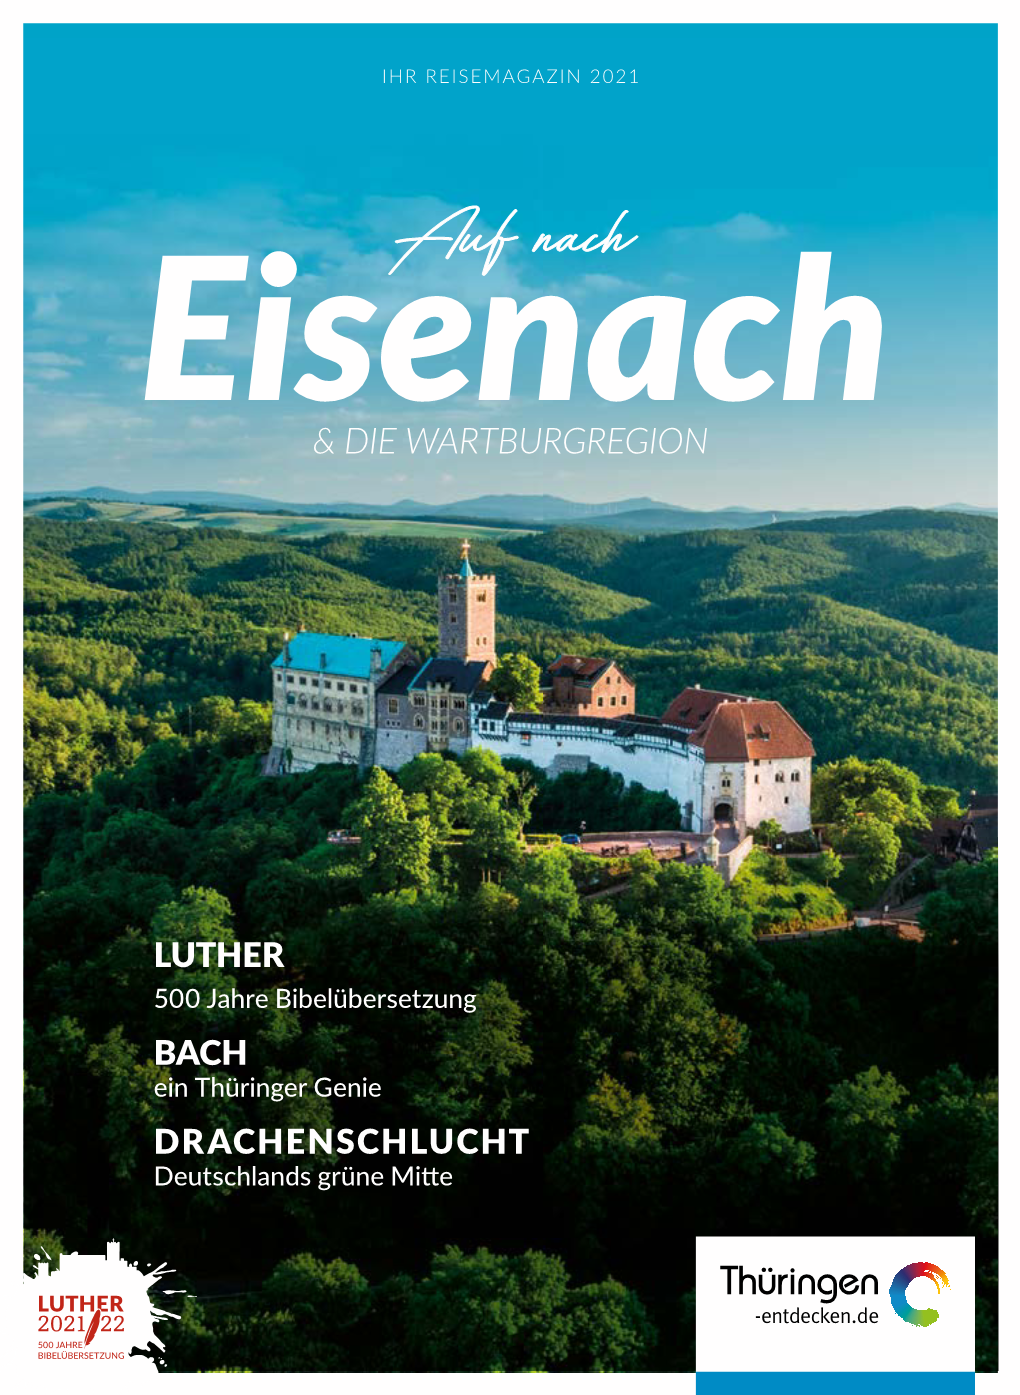 Reisemagazin 2021 Katalog Als PDF Herunterladen